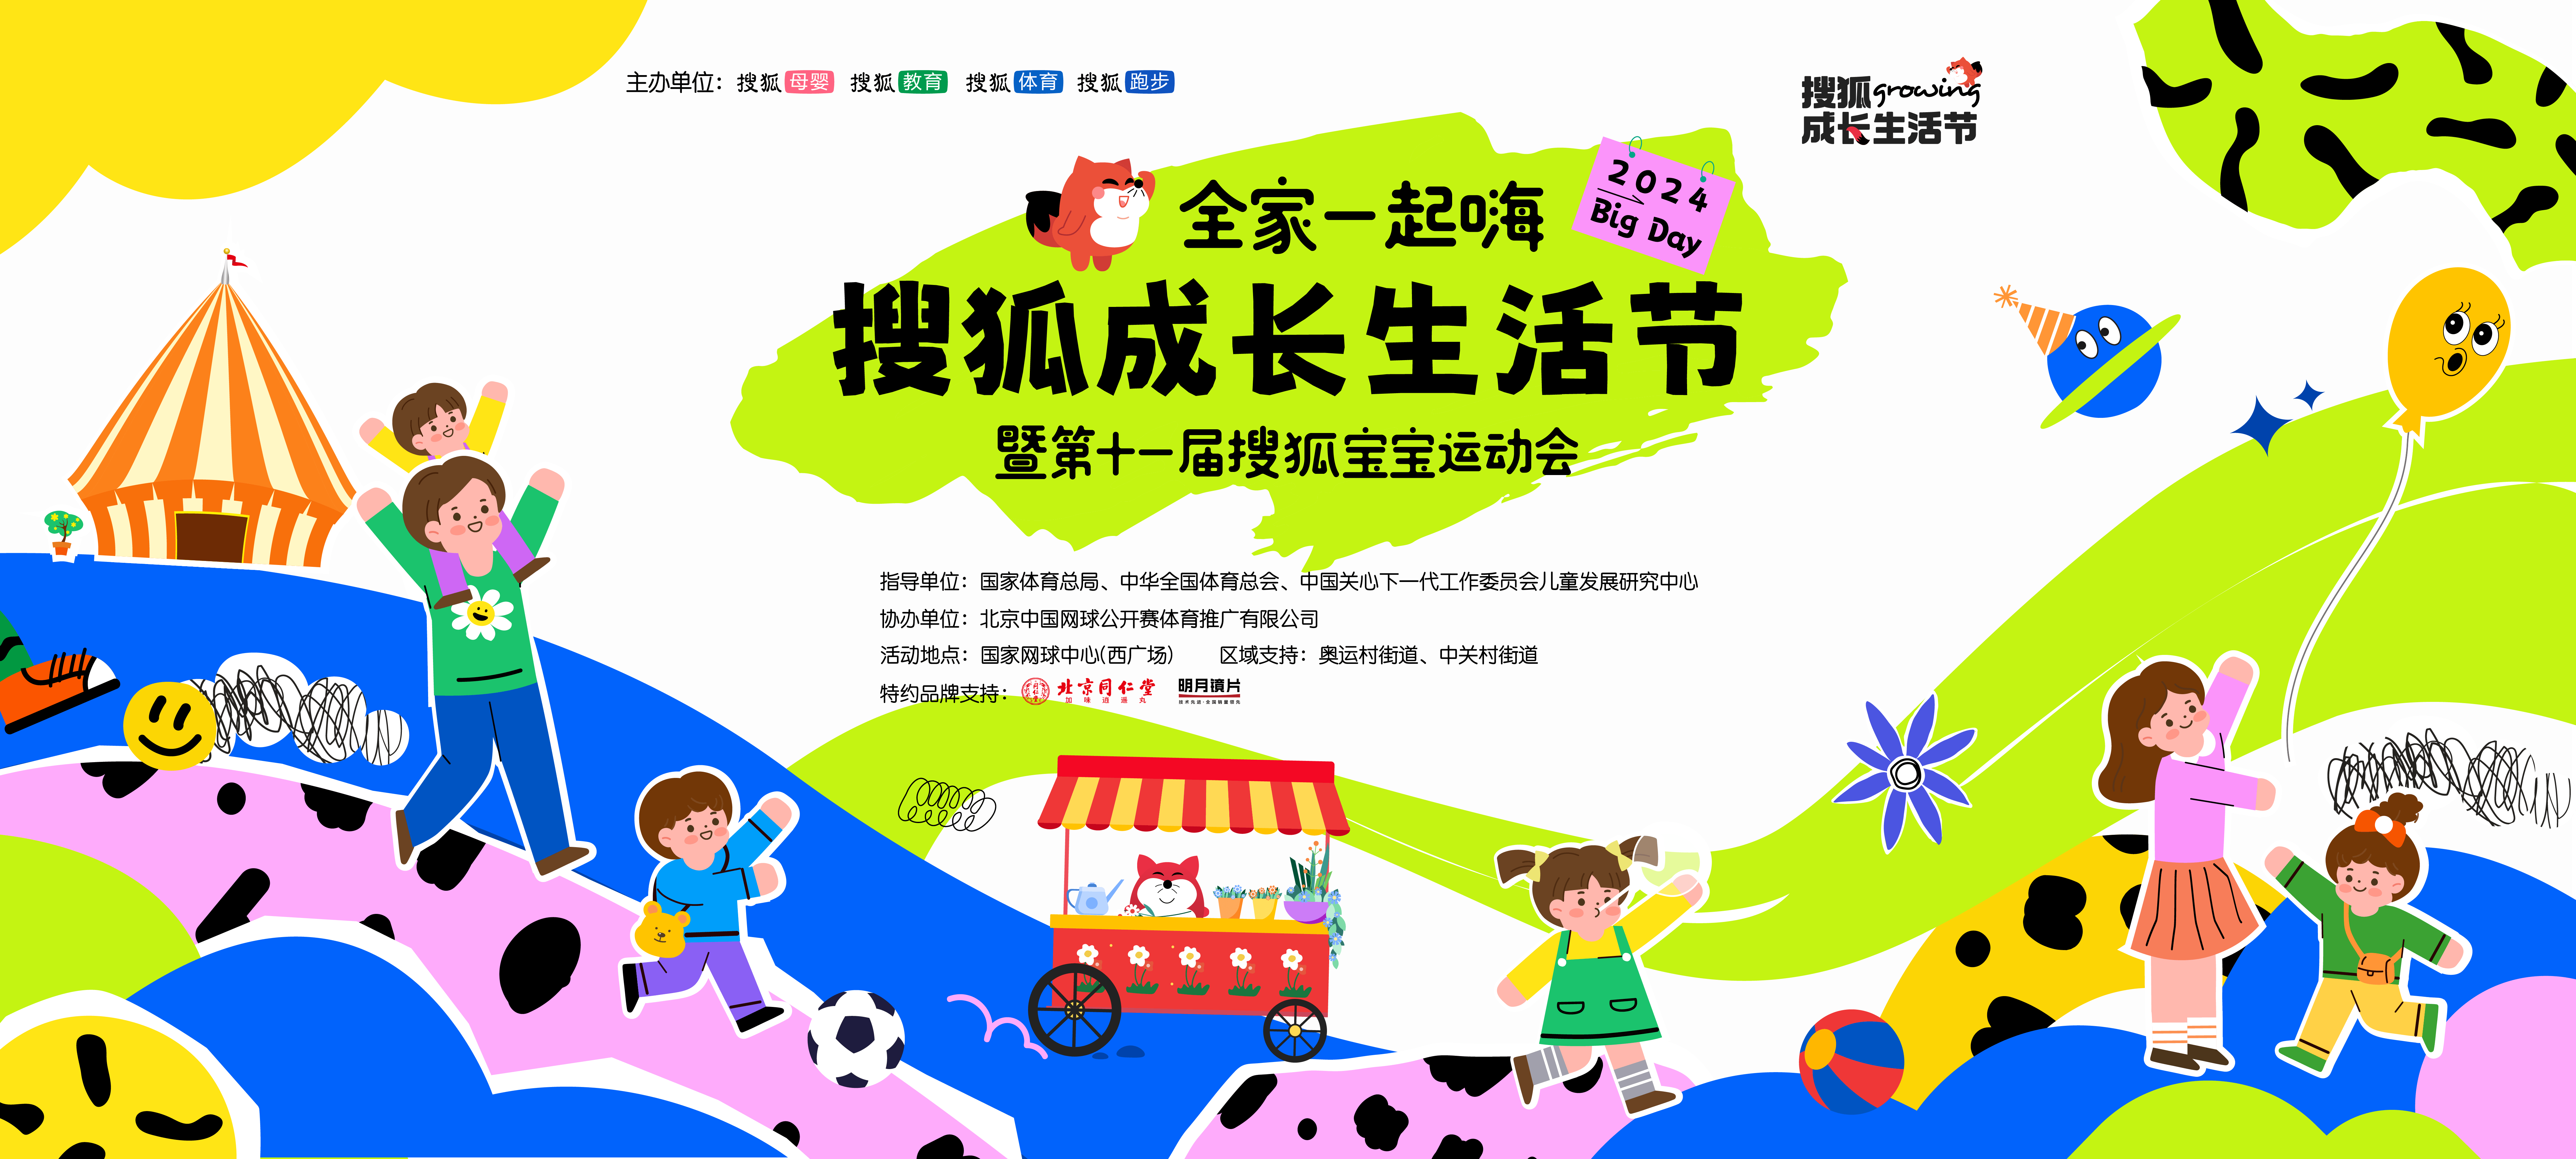 搜狐成长生活节2024 big day,亲子同欢,乐趣无限!